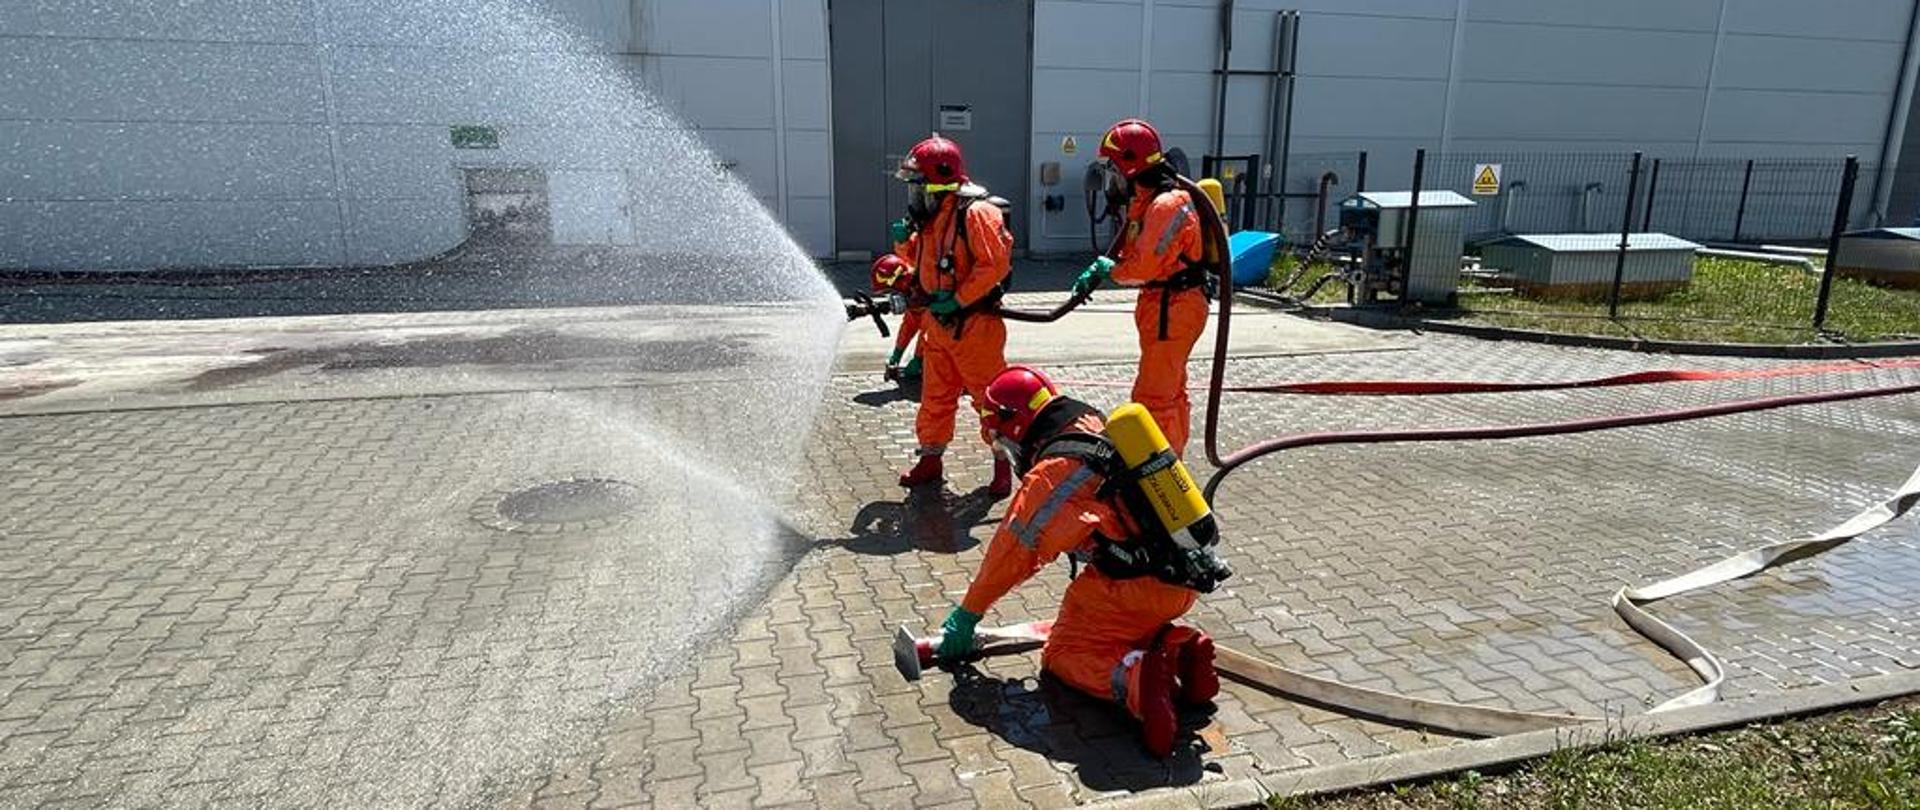 Zdjęcie ukazuje na pierwszym planie trzech strażaków, którzy są ubrani w ubrania chemiczne. Podają oni prąd wody i przygotowują kurtynę wodną. Na drugim planie widać obiekt firmy GÓRSTAL.